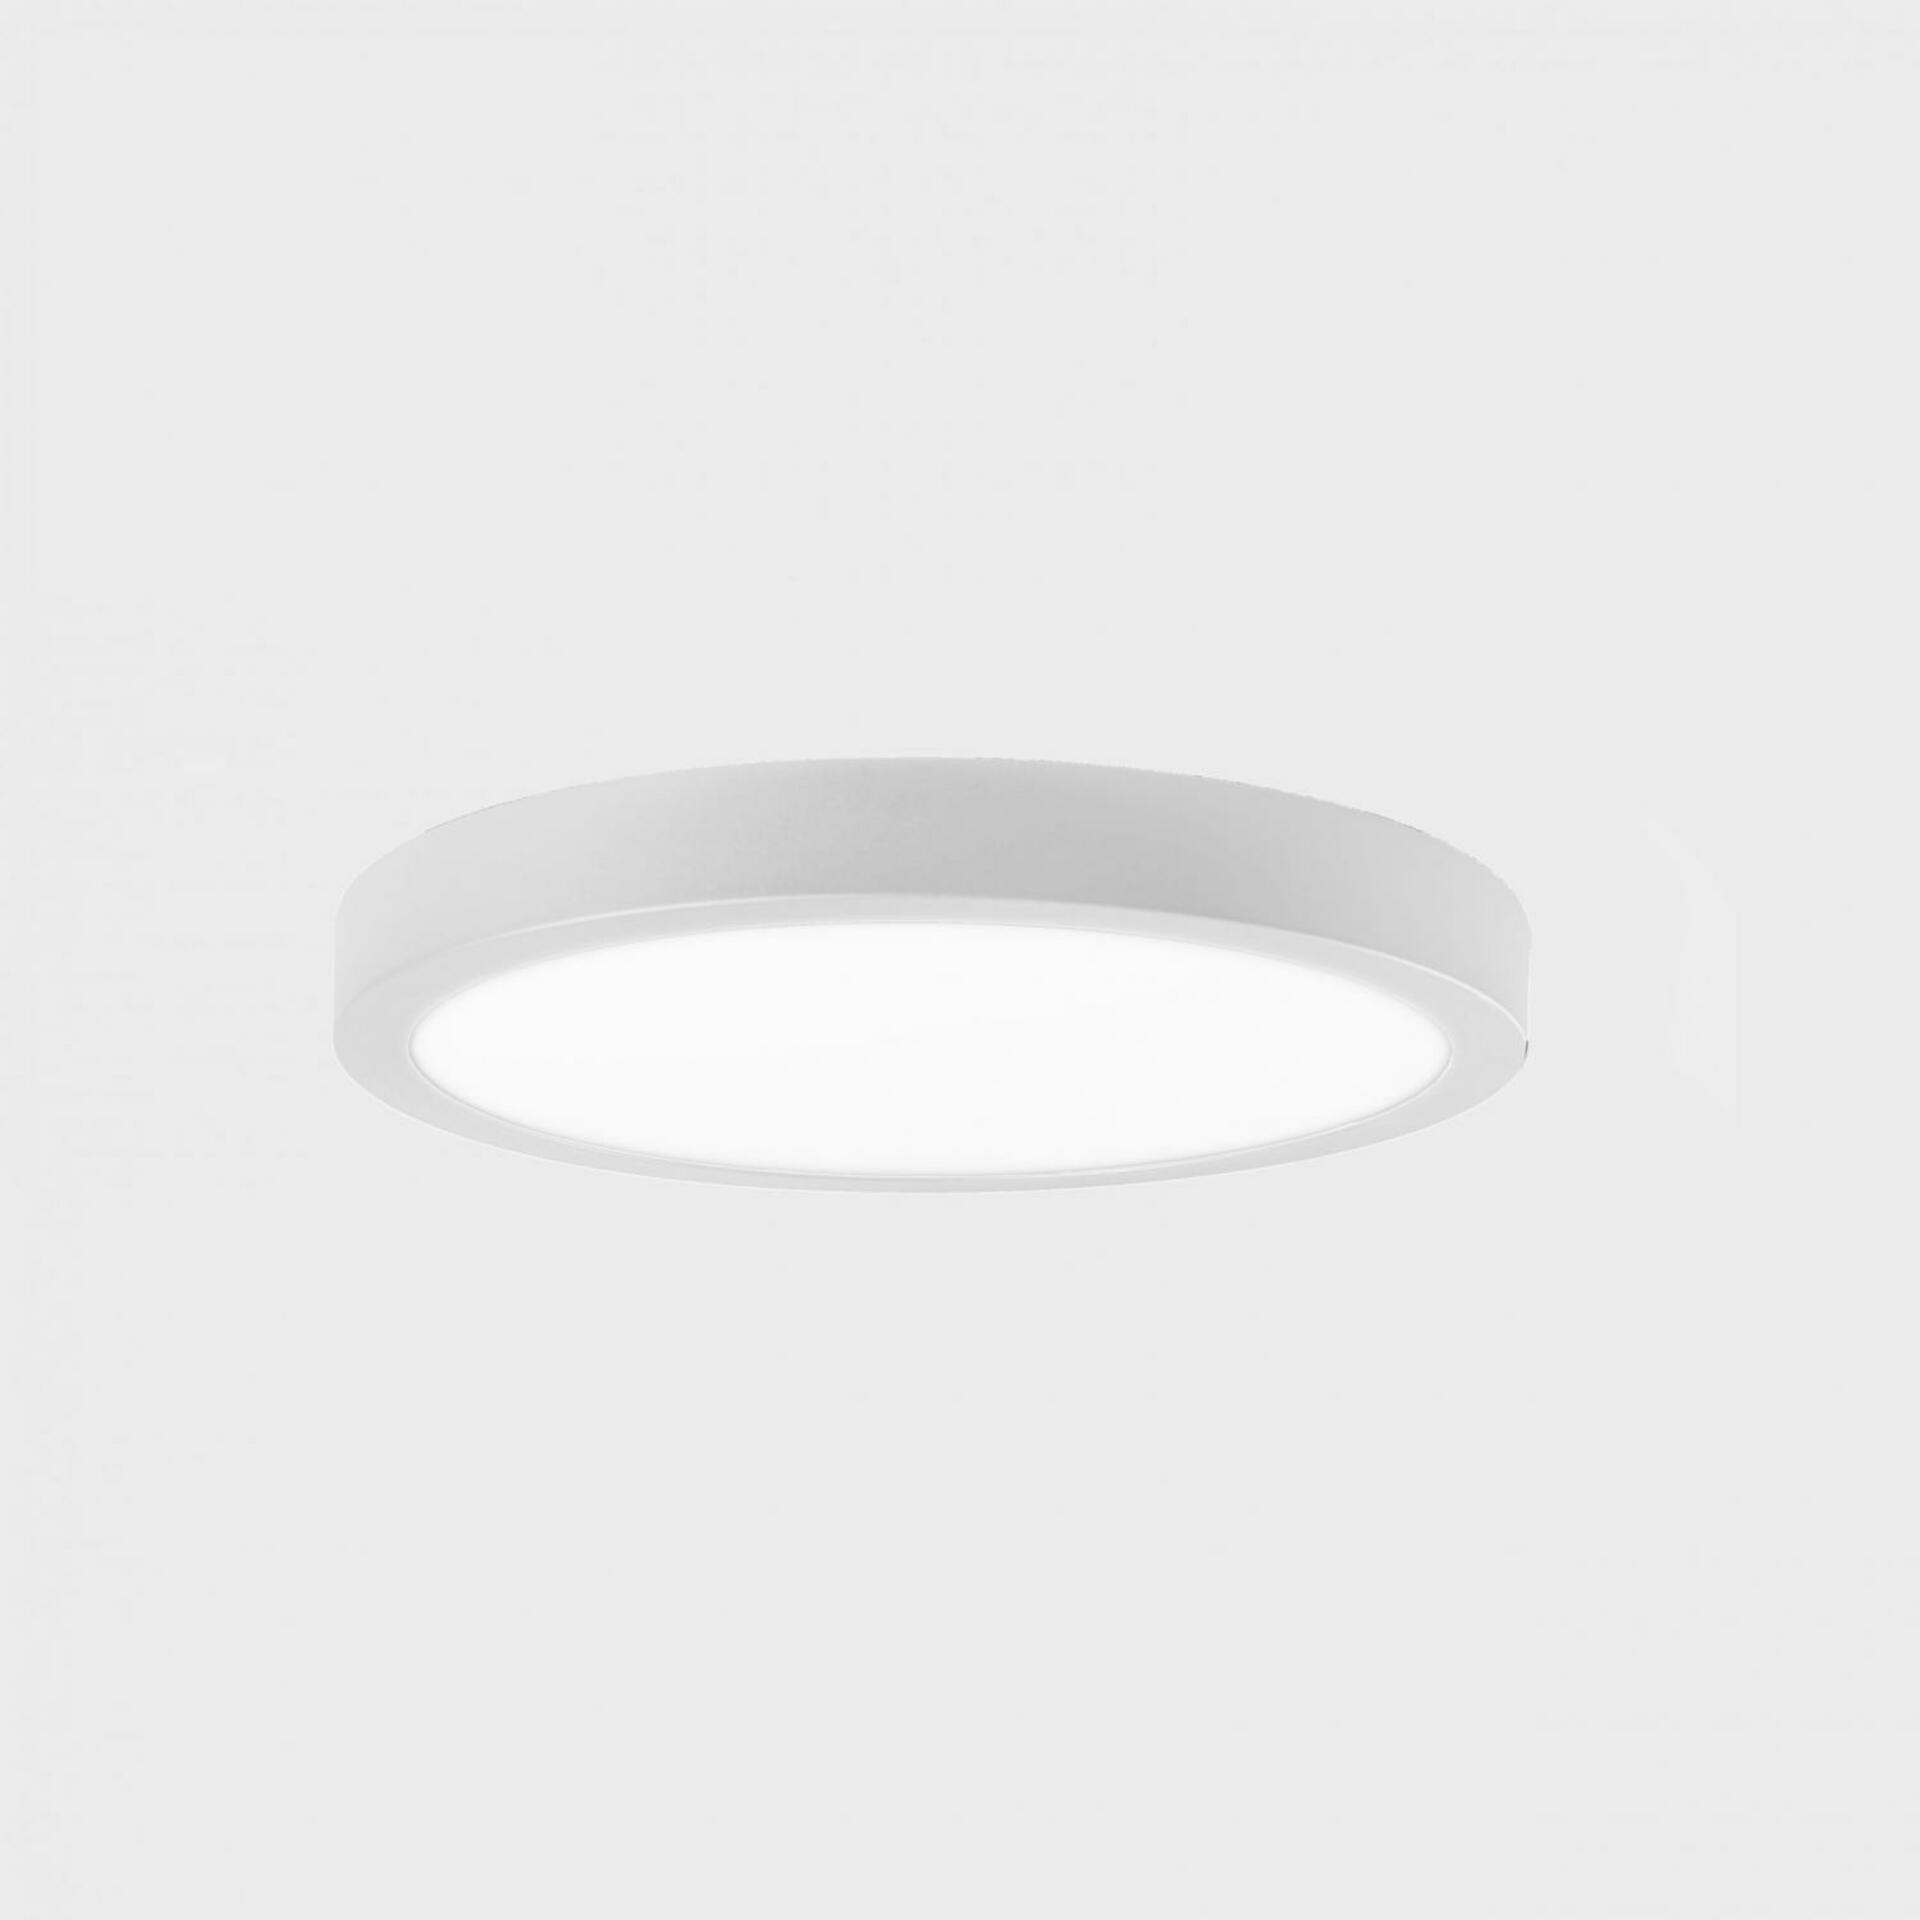 KOHL LIGHTING KOHL-Lighting DISC SLIM stropní svítidlo pr. 400 mm bílá 38 W CRI 80 4000K 1.10V